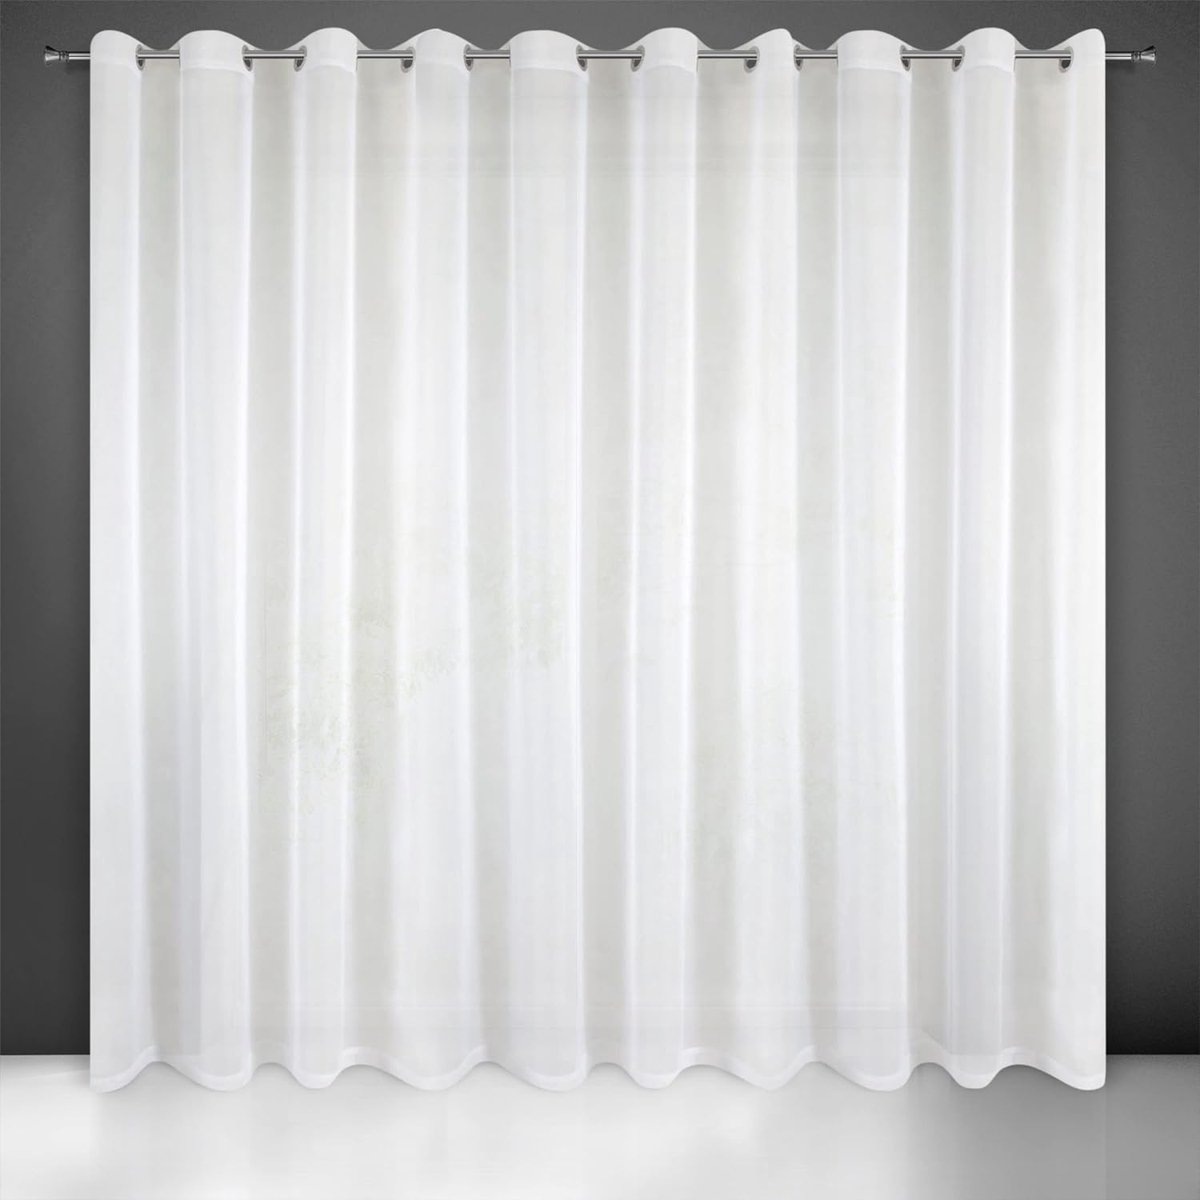 Glad transparant voile gordijn met ogen - 300 x 250 cm wit - voor slaapkamer woonkamer